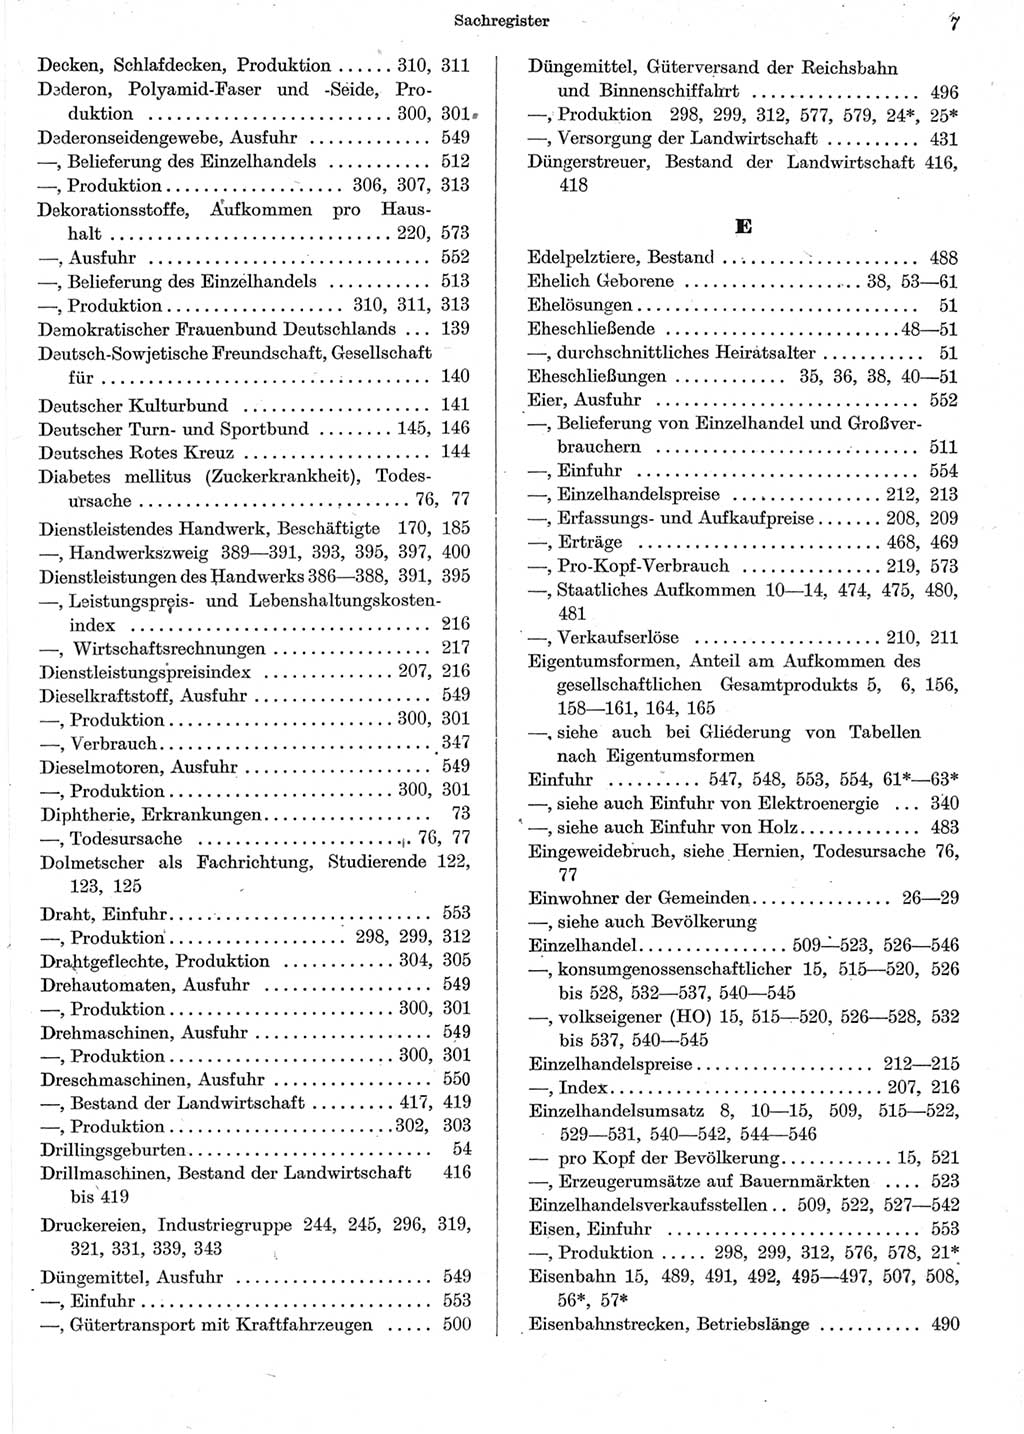 Statistisches Jahrbuch der Deutschen Demokratischen Republik (DDR) 1962, Seite 7 (Stat. Jb. DDR 1962, S. 7)